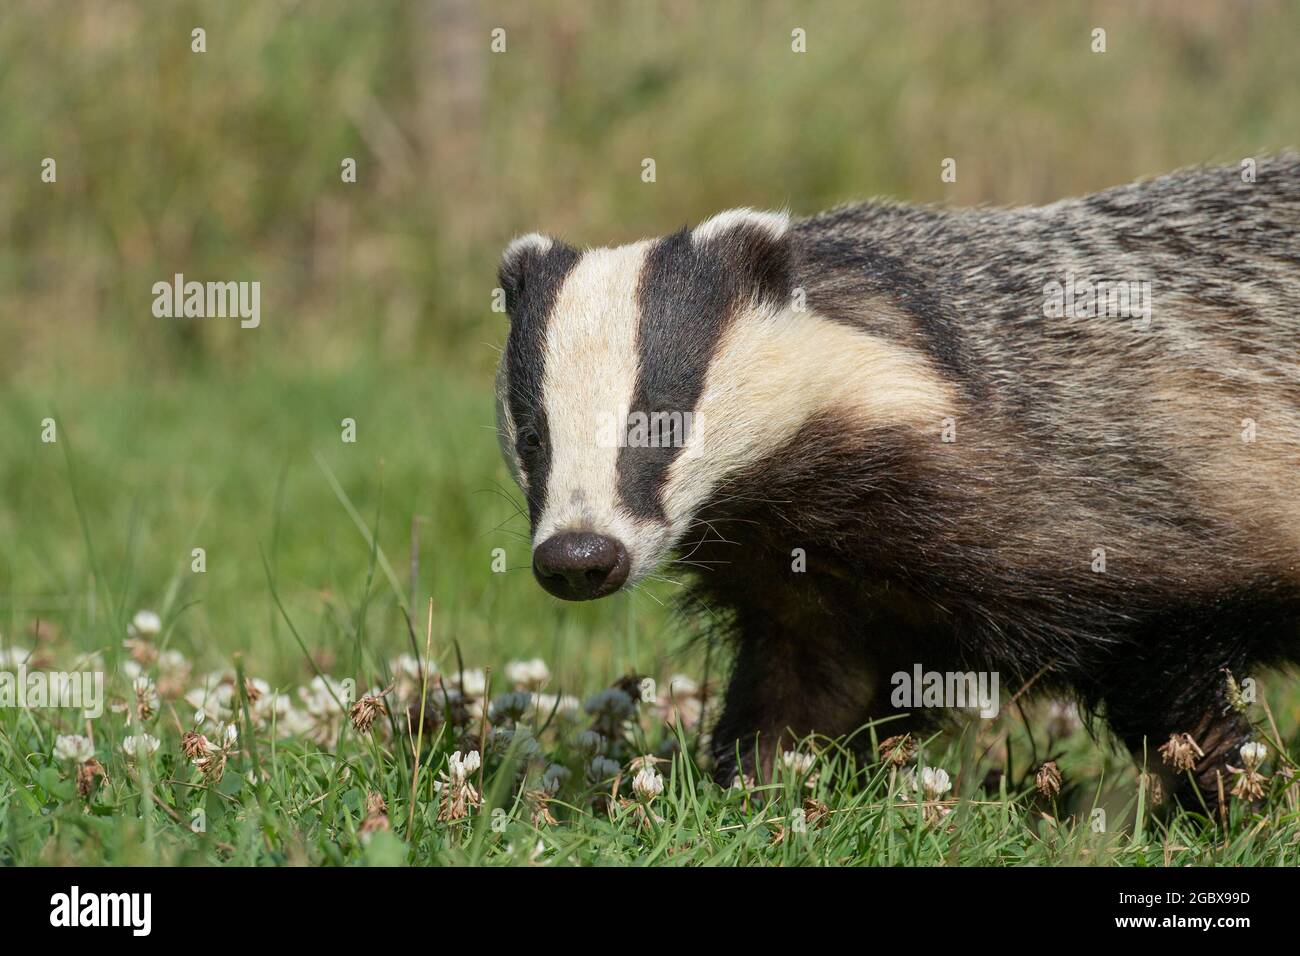 Badger, meles meles Stock Photo